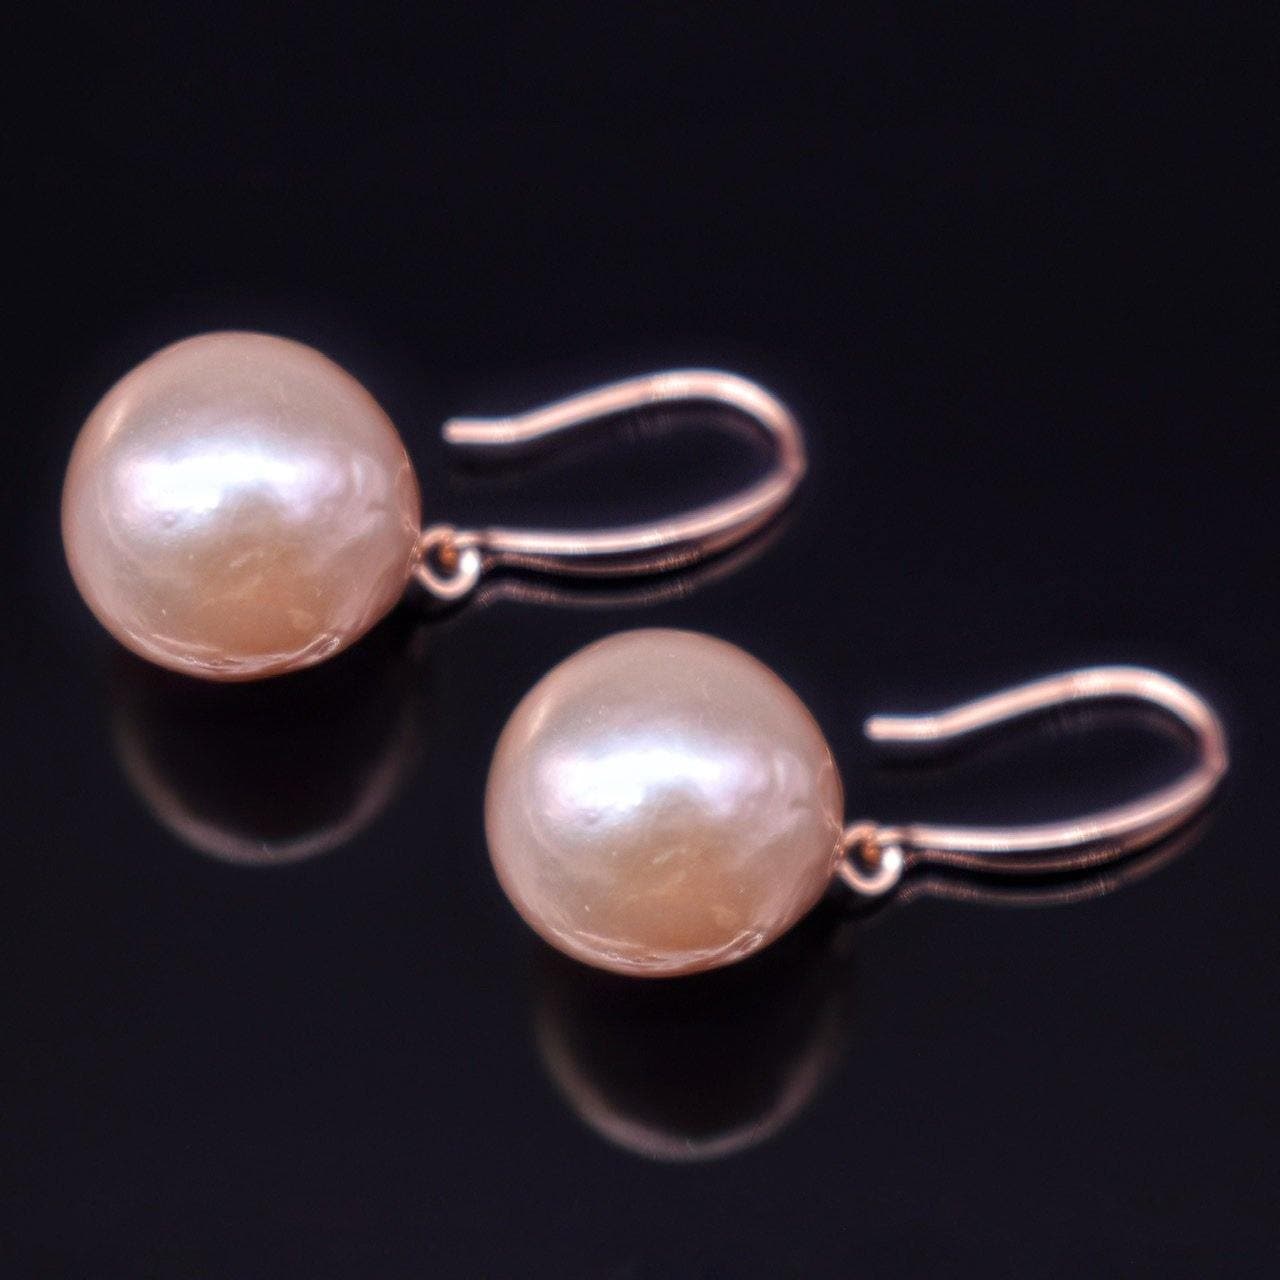 Baroque Pearl Earrings - Esmeralda - Akuna Pearls